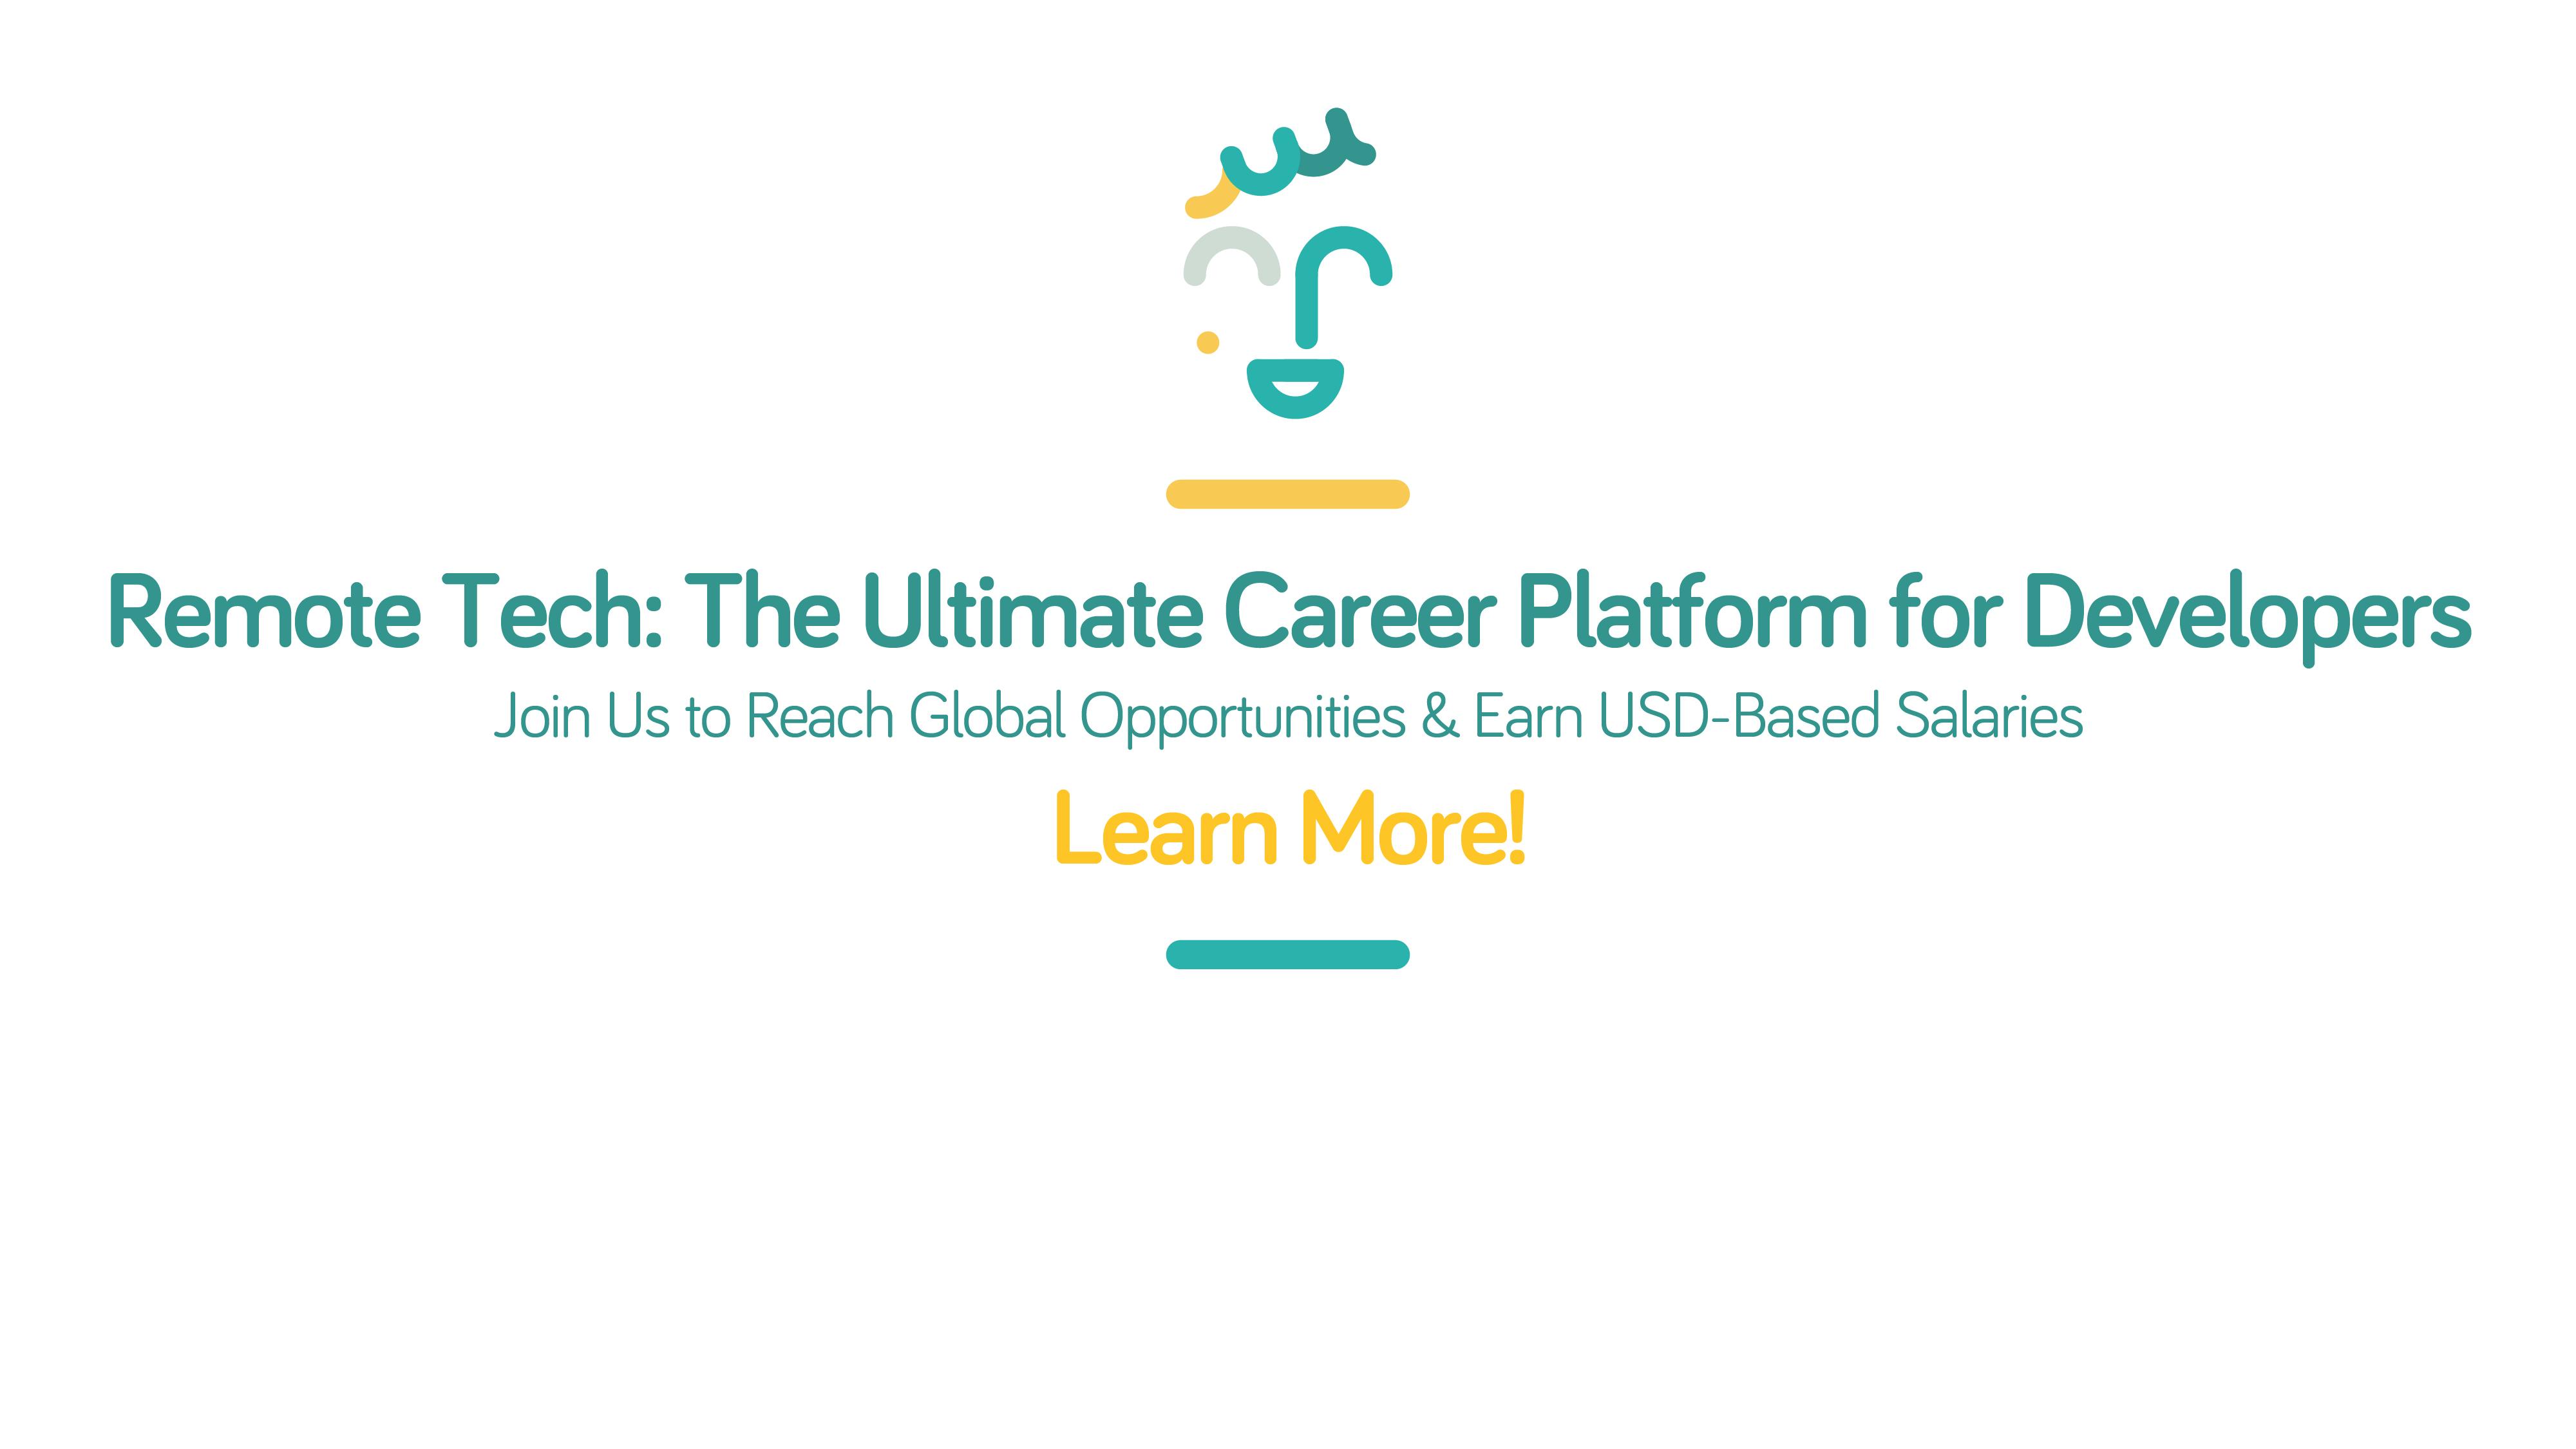 The ultimate career platform for developers